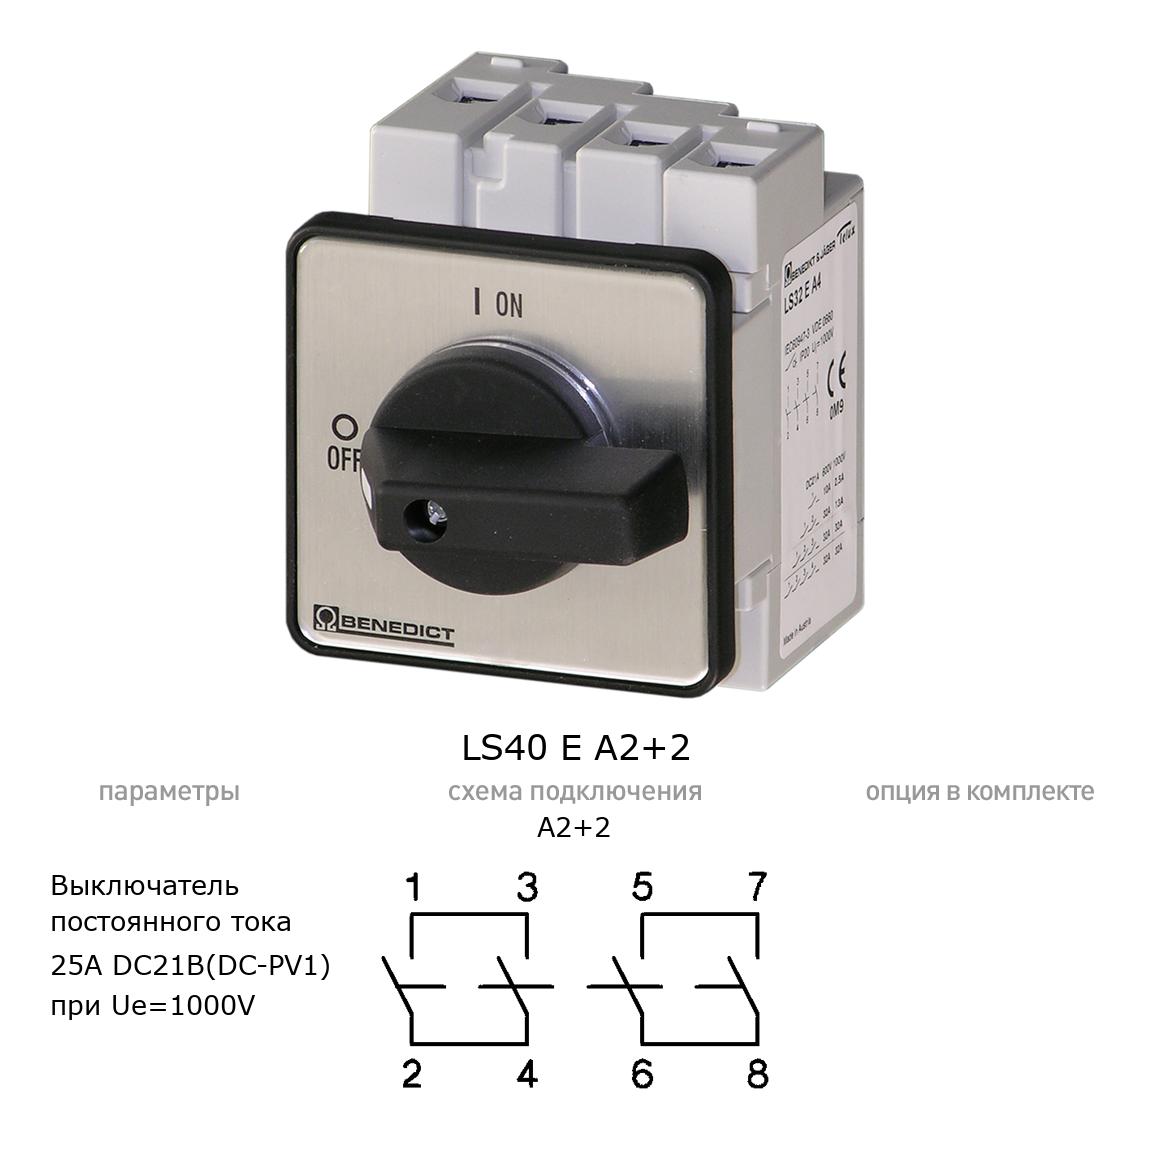 Кулачковый переключатель для постоянного тока (DC) LS40 E A2+2 BENEDICT